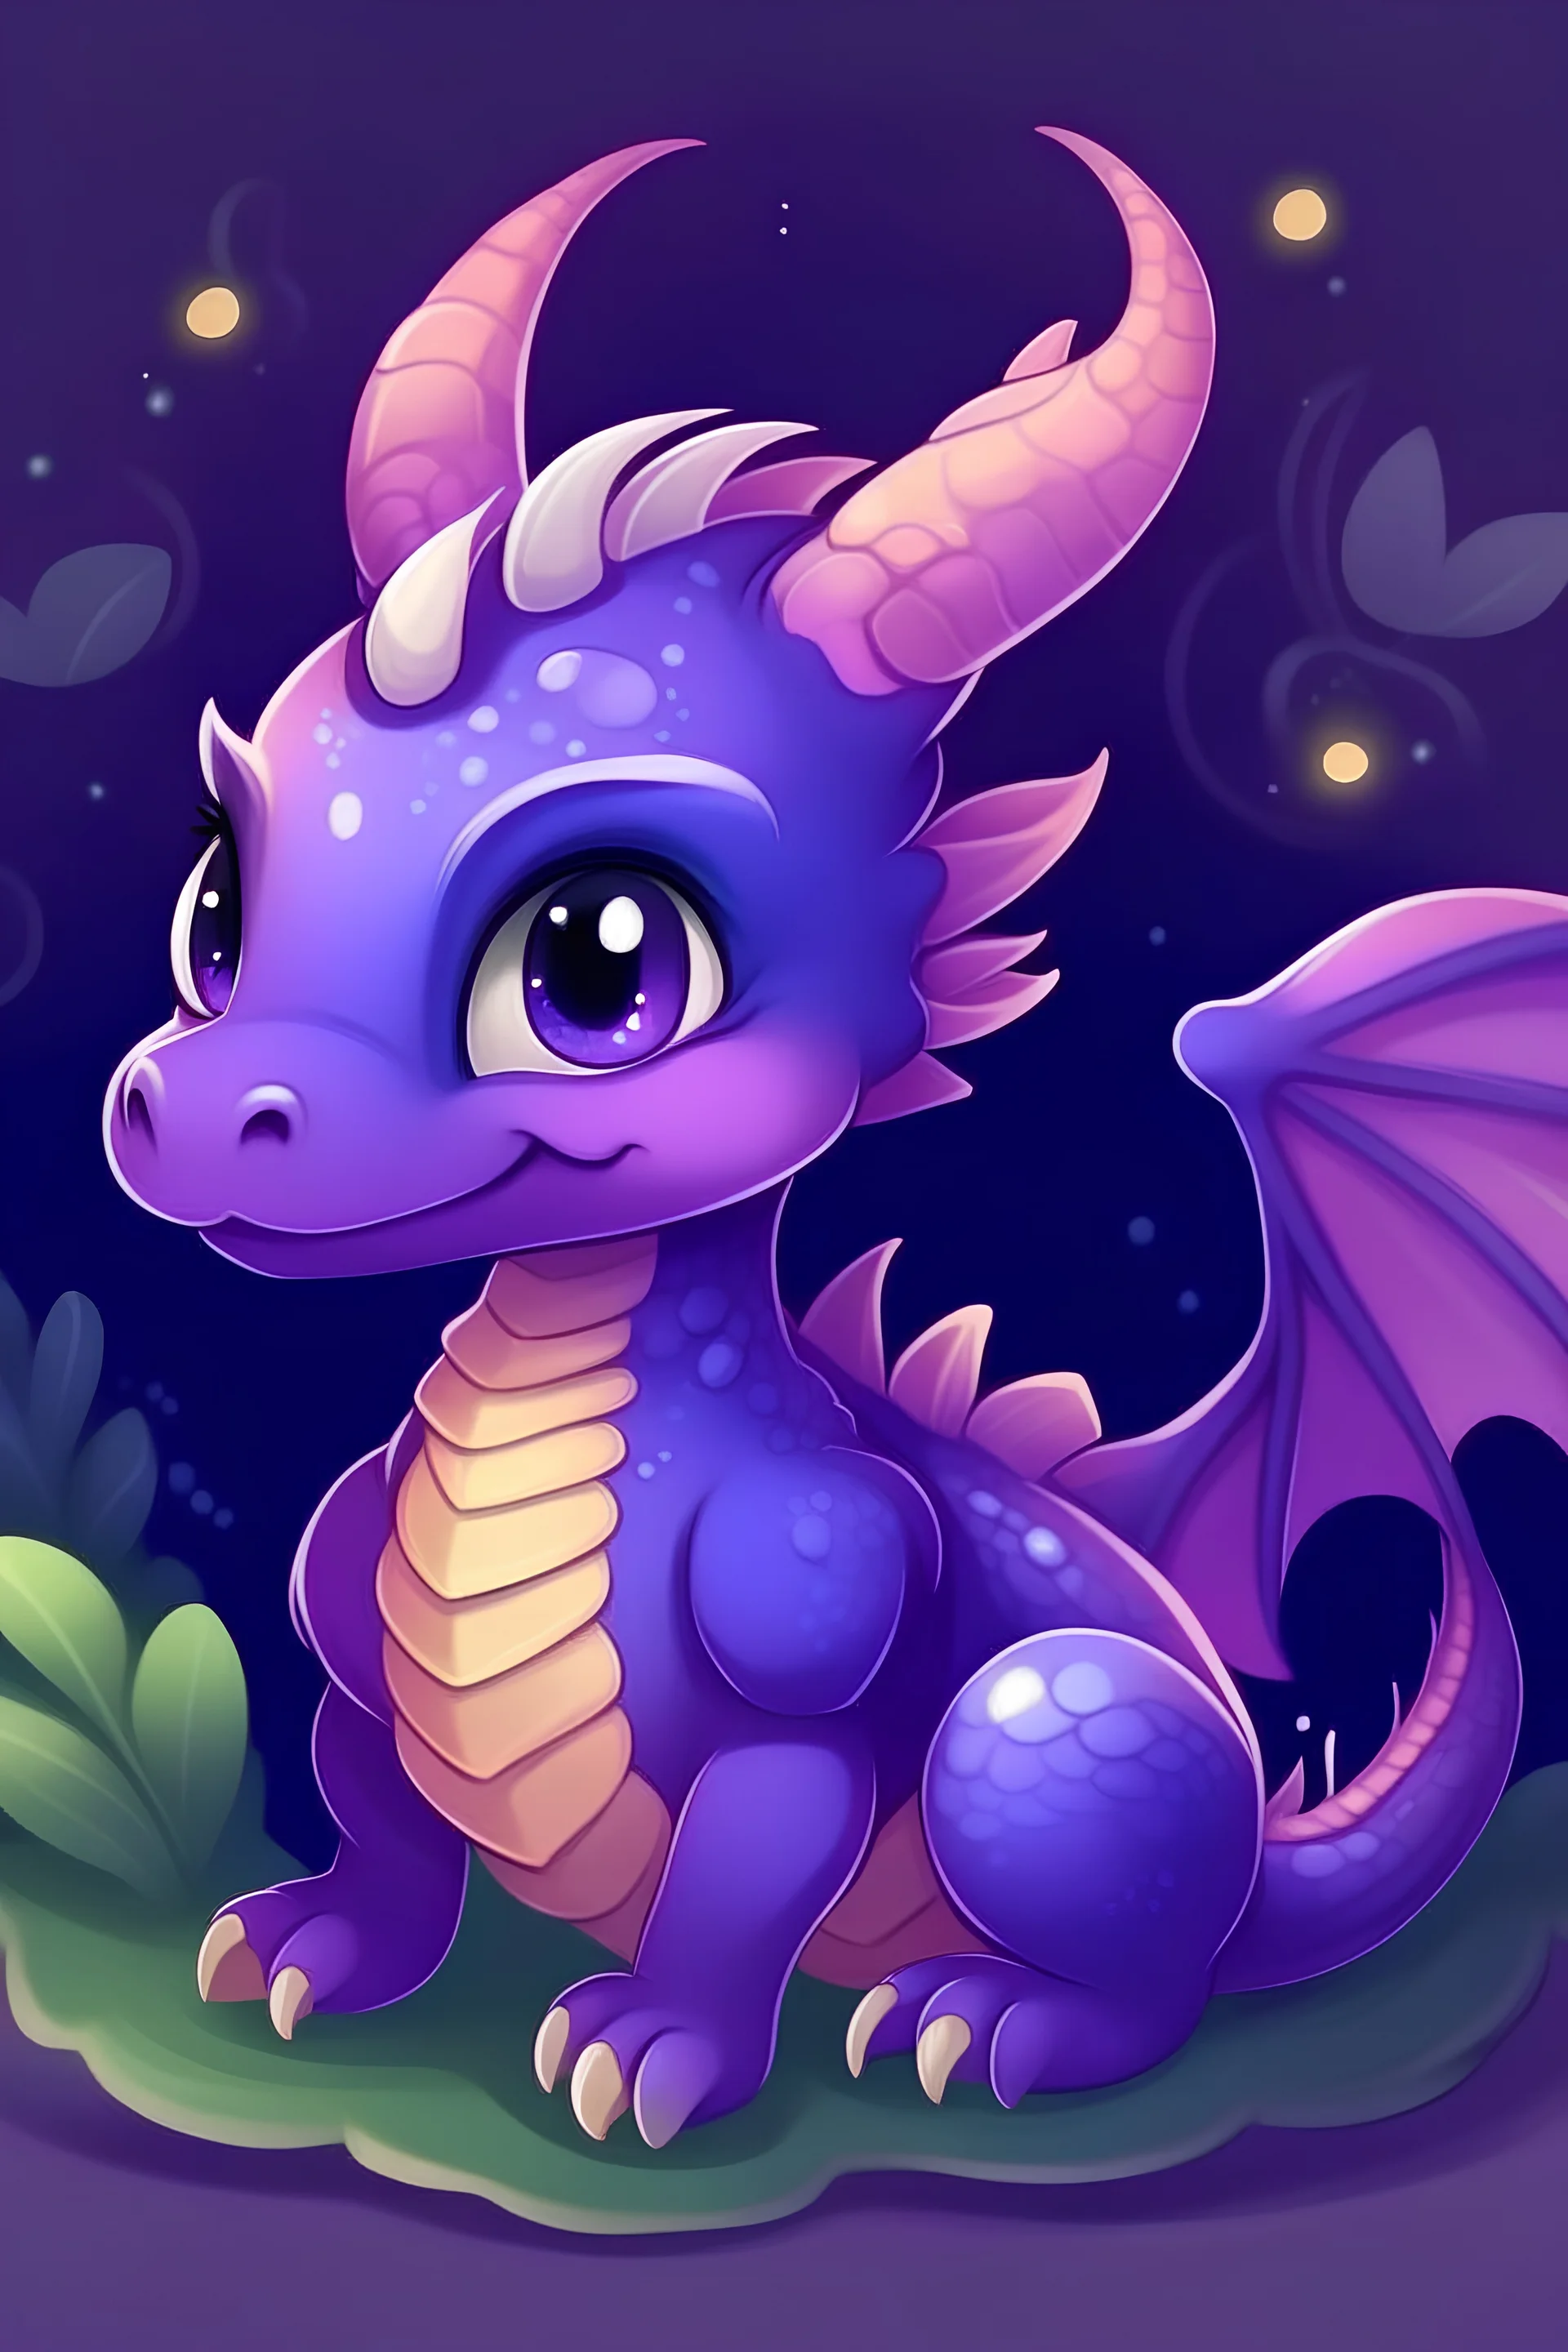 Generate a picture of a cute purple dragon fanart